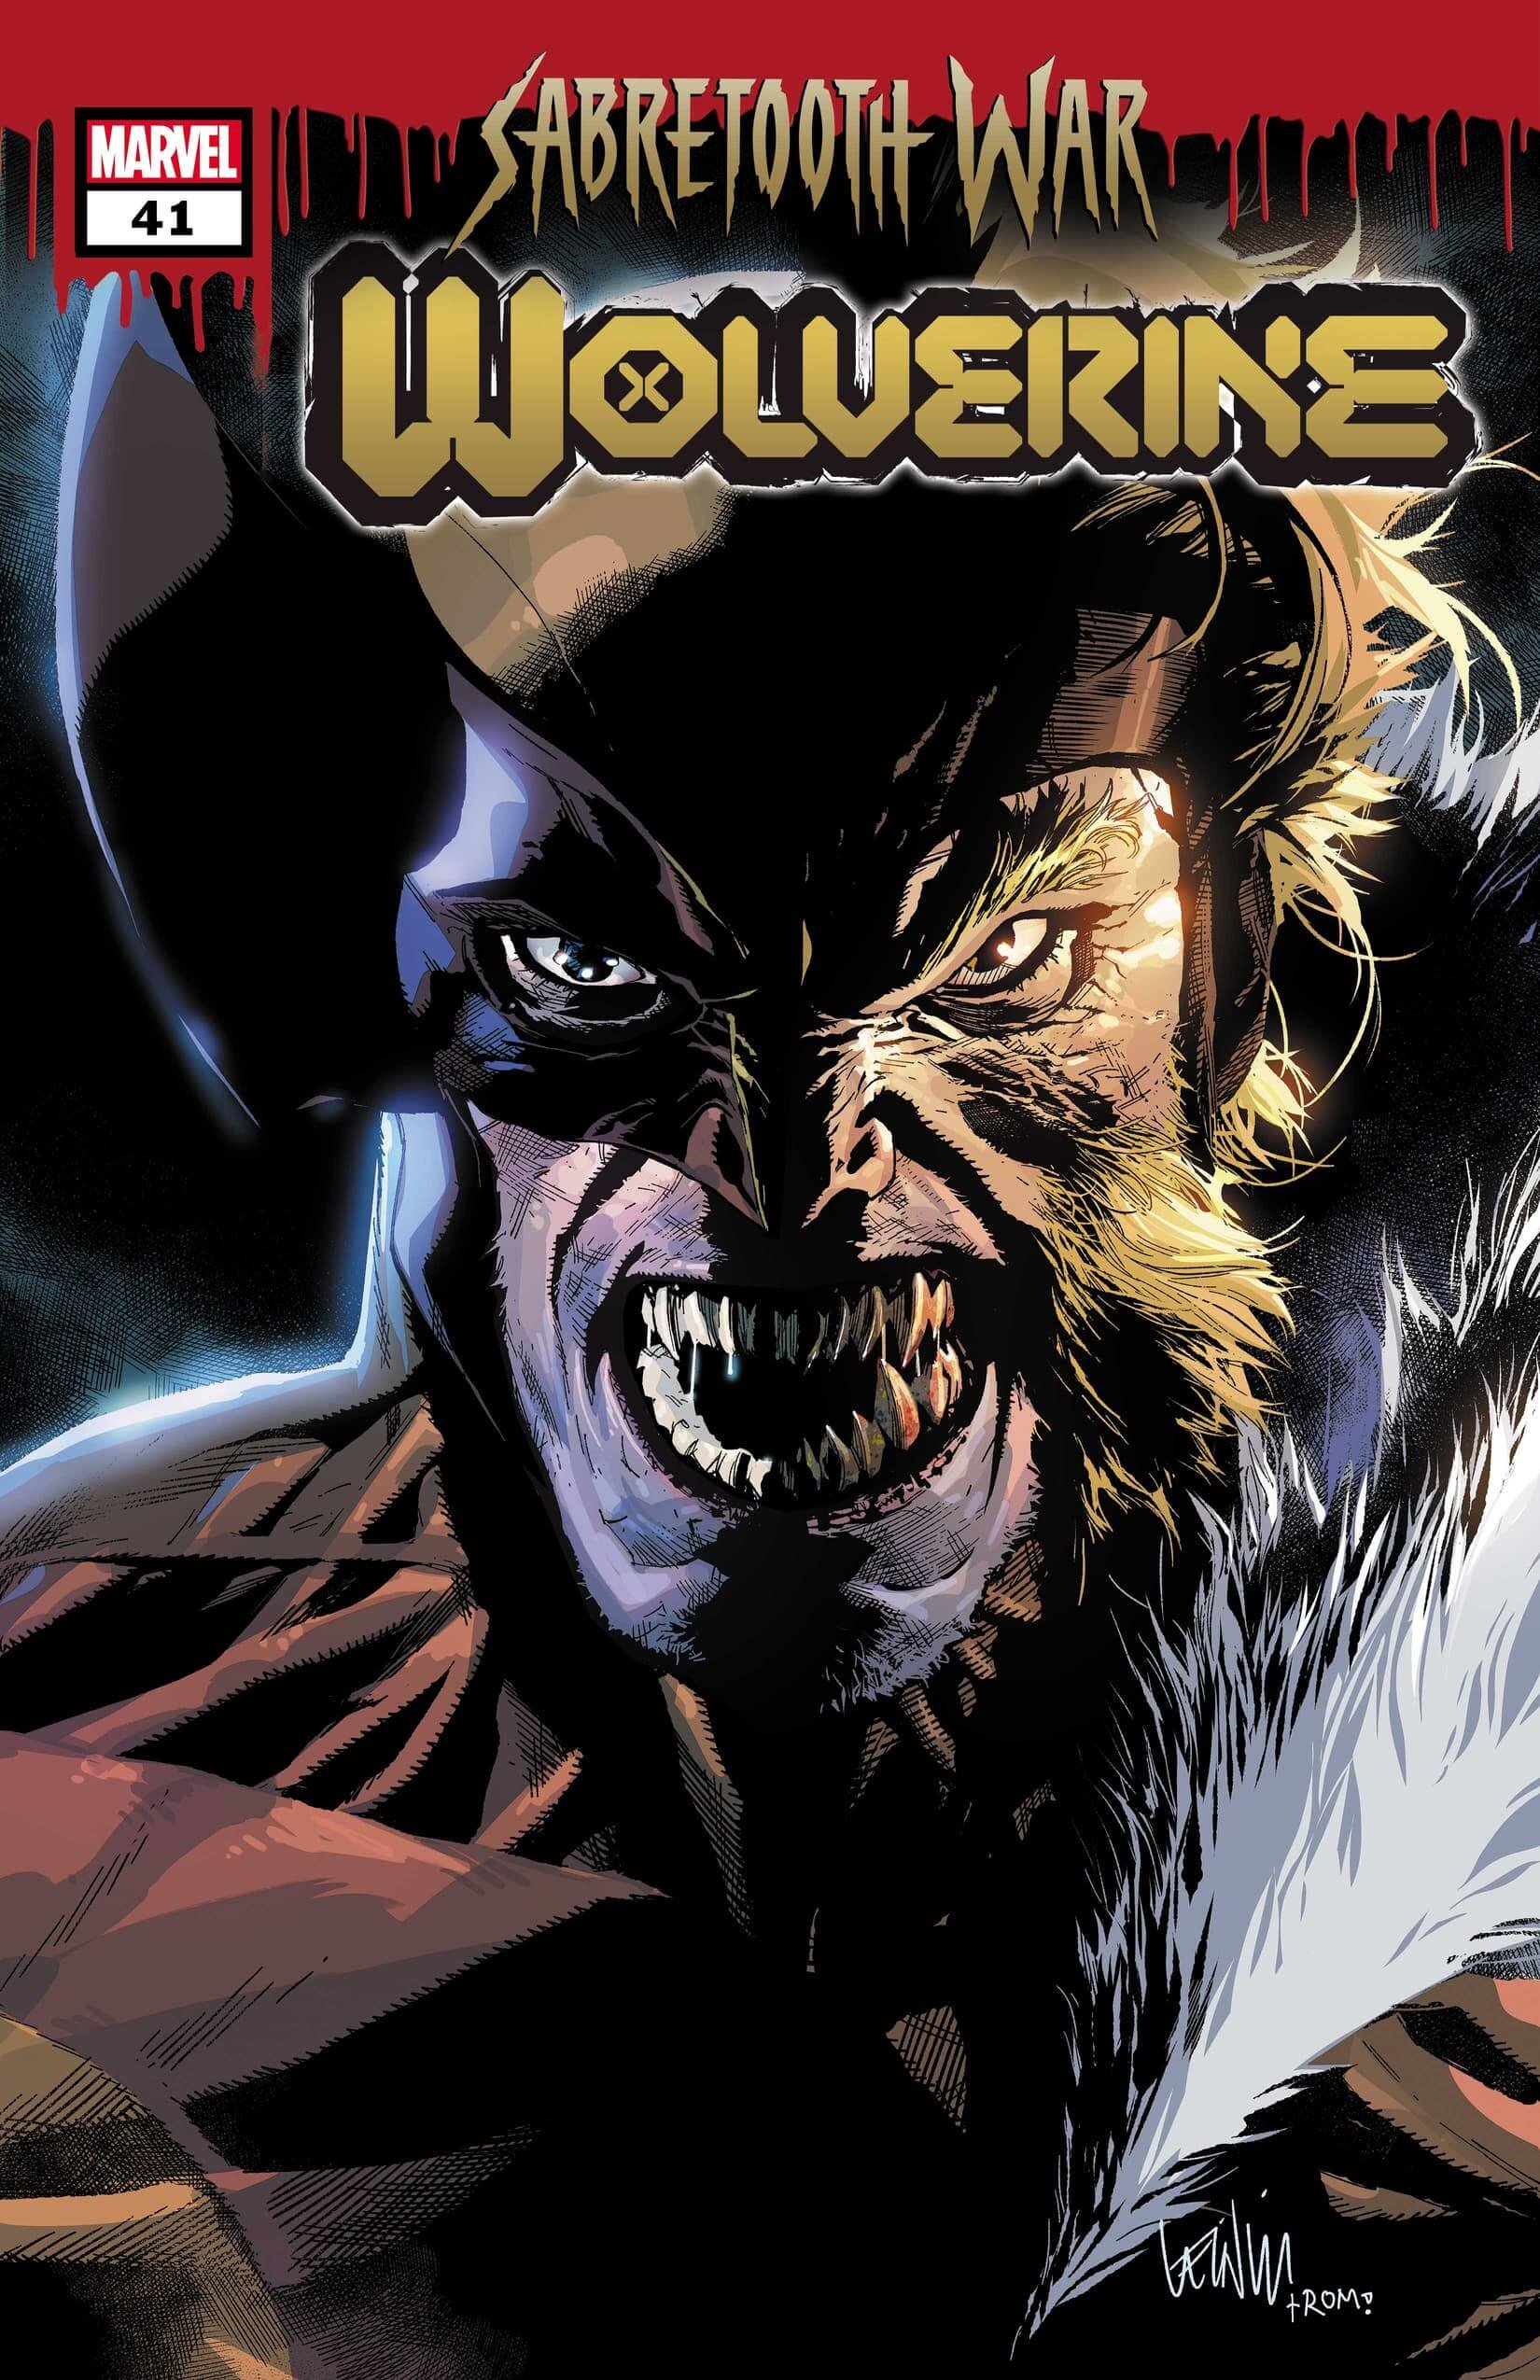 Cover di Wolverine 41 di Leinil Francis Yu, primo capitolo di Sabretooth War